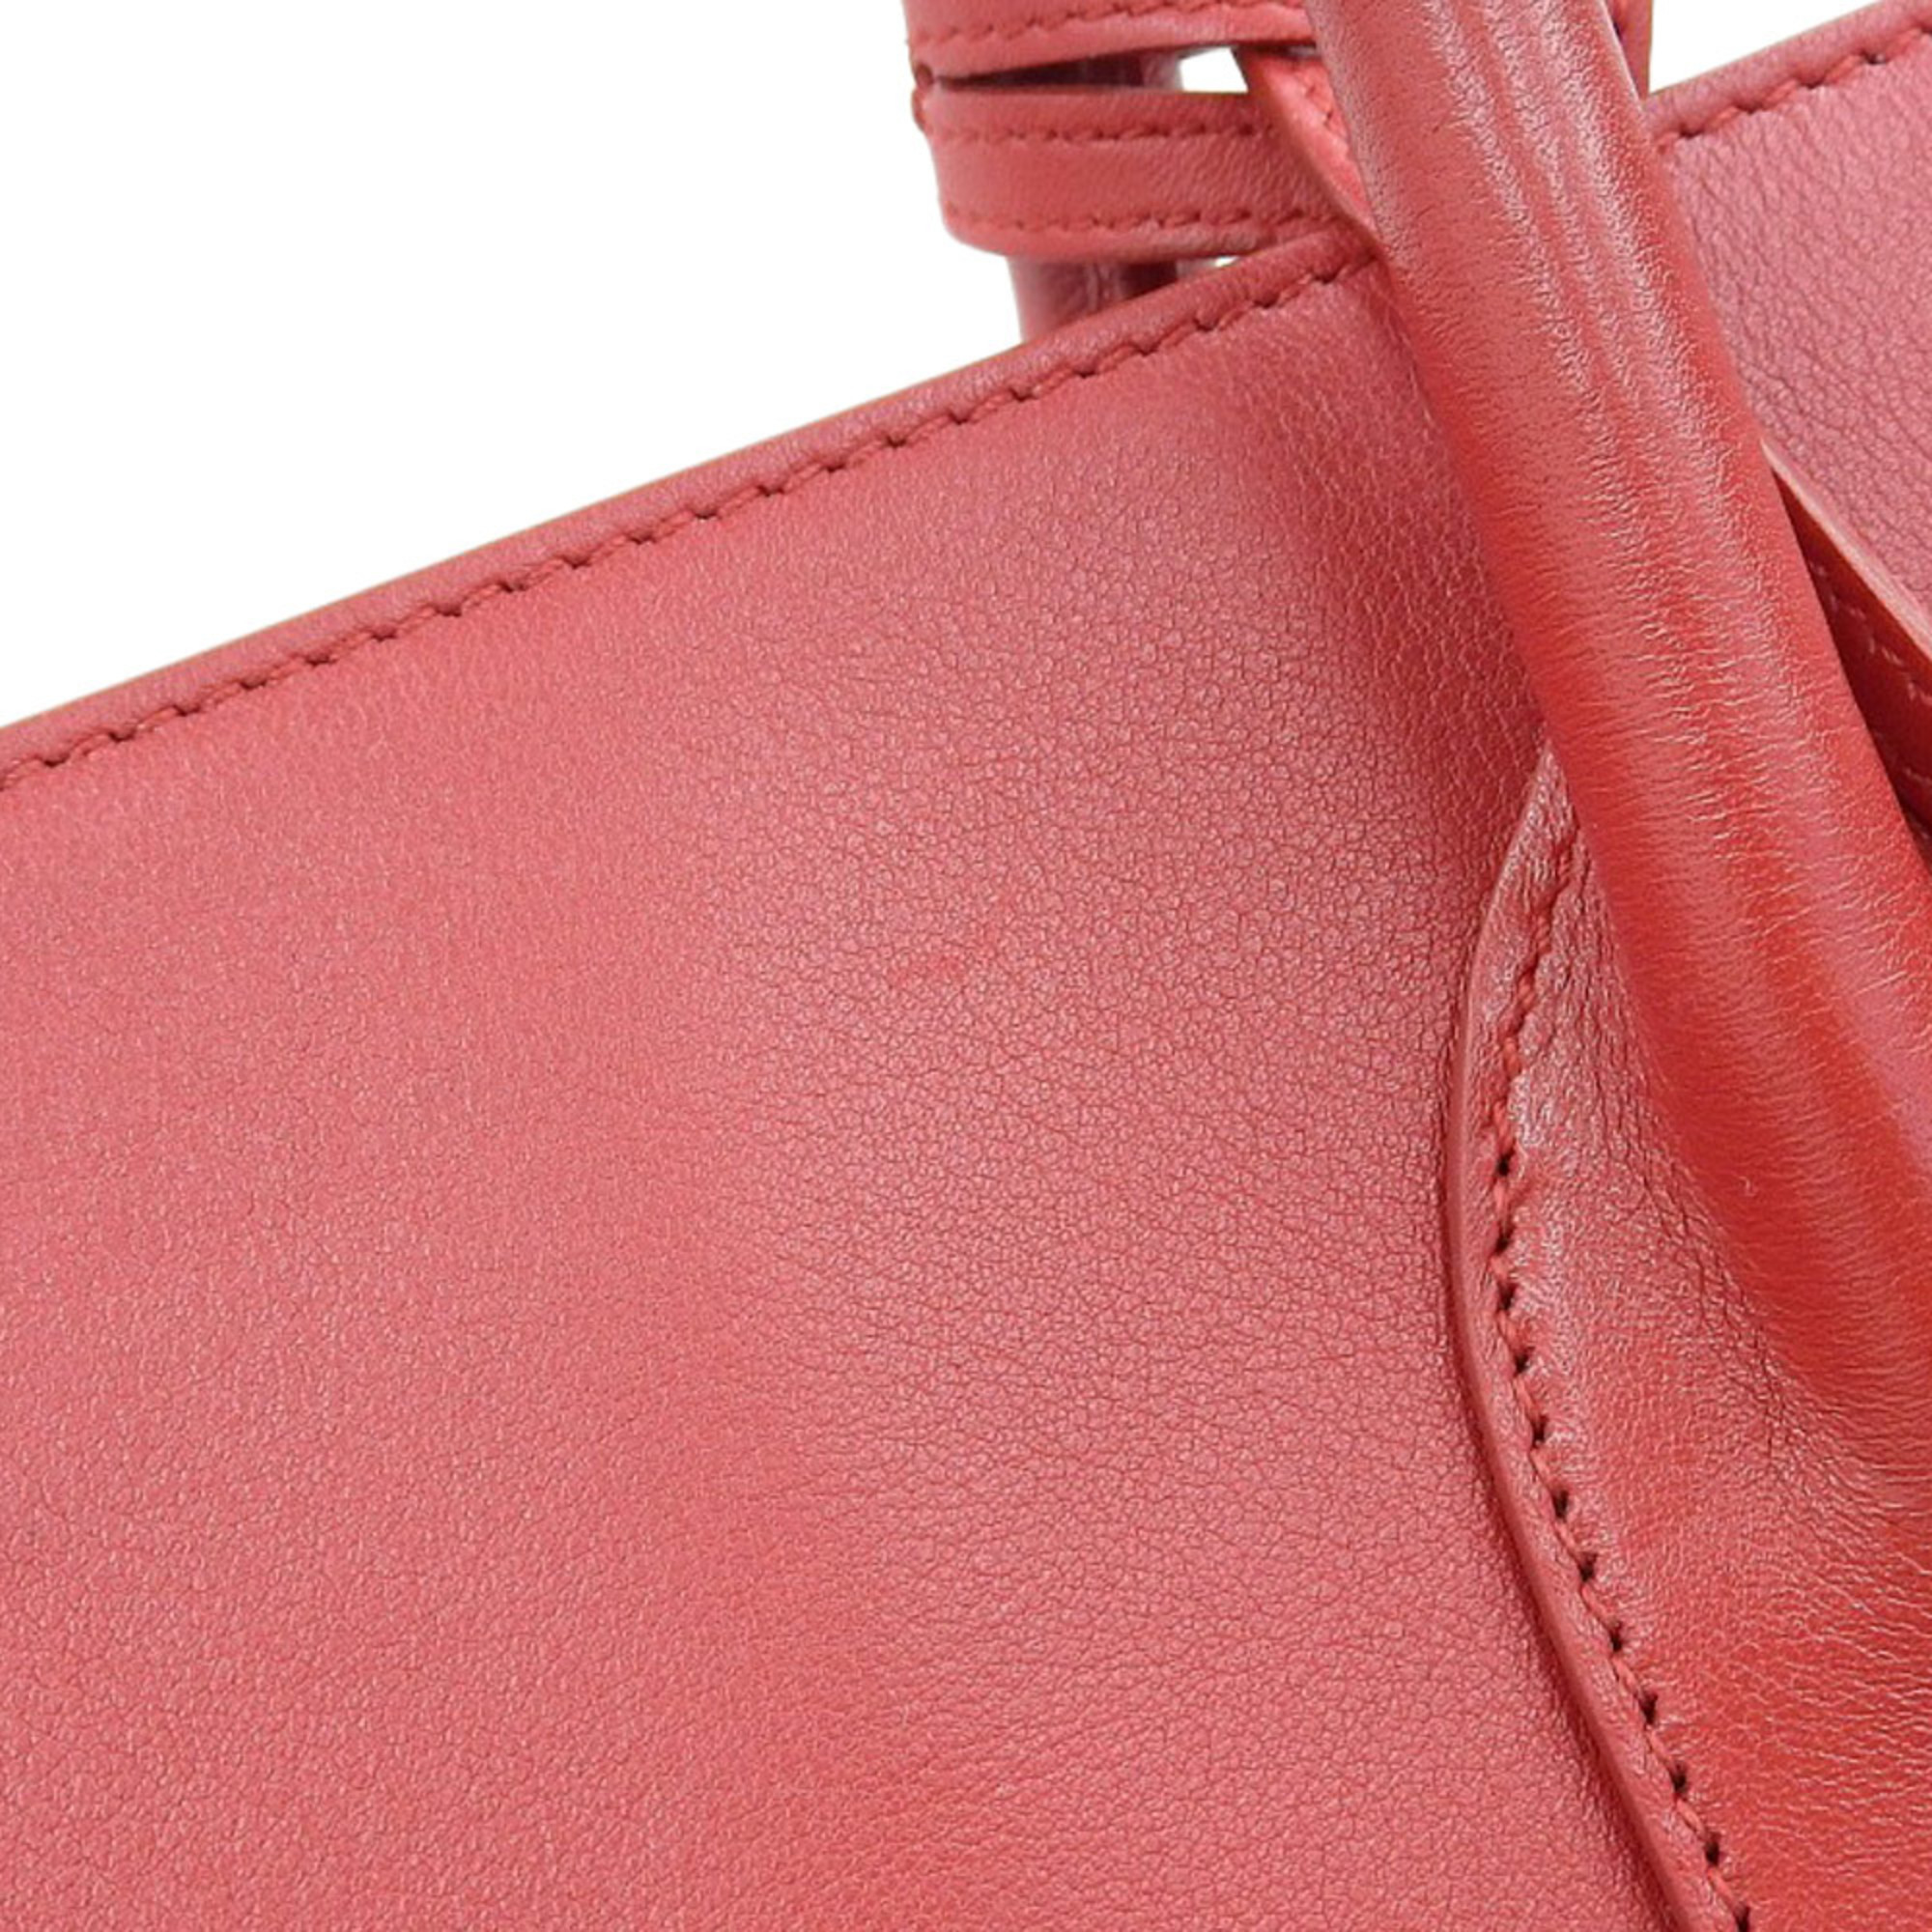 Saint Laurent SAINT LAURENT Sac de Jour Handbag Leather Red 324823